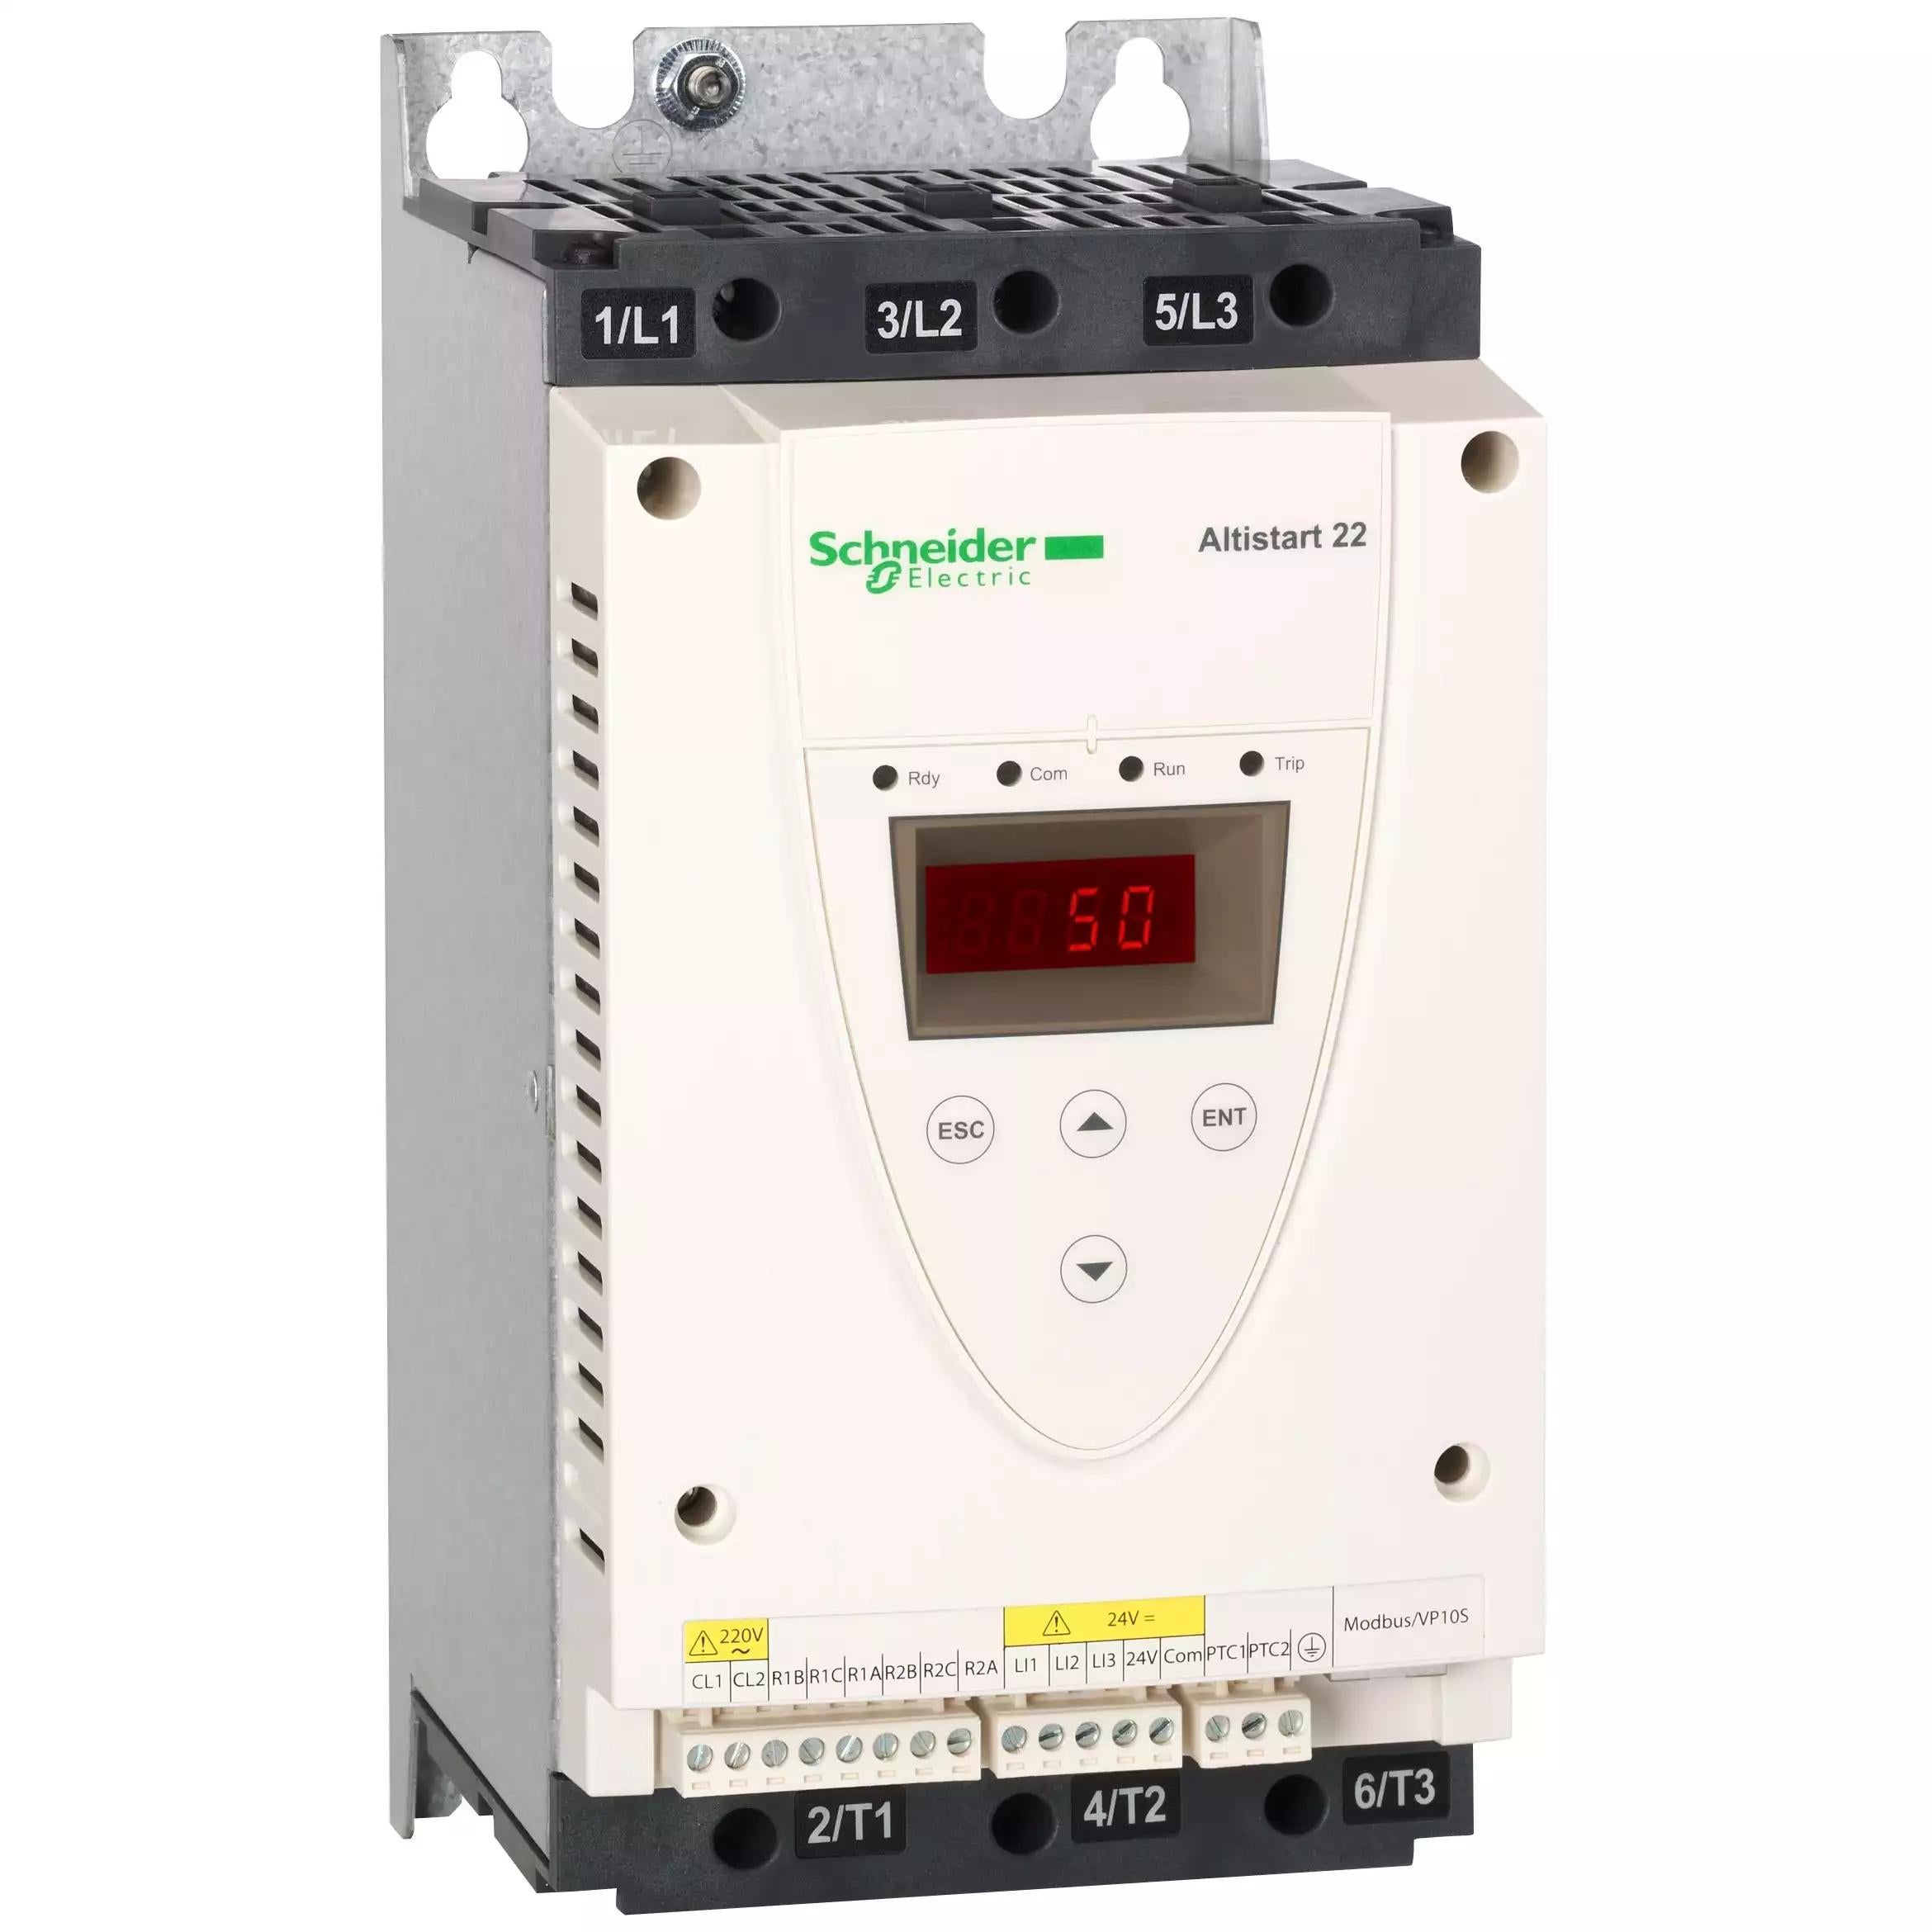 soft starter-ATS22-control 220V-power 230V(7.5kW)/400...440V(15kW)